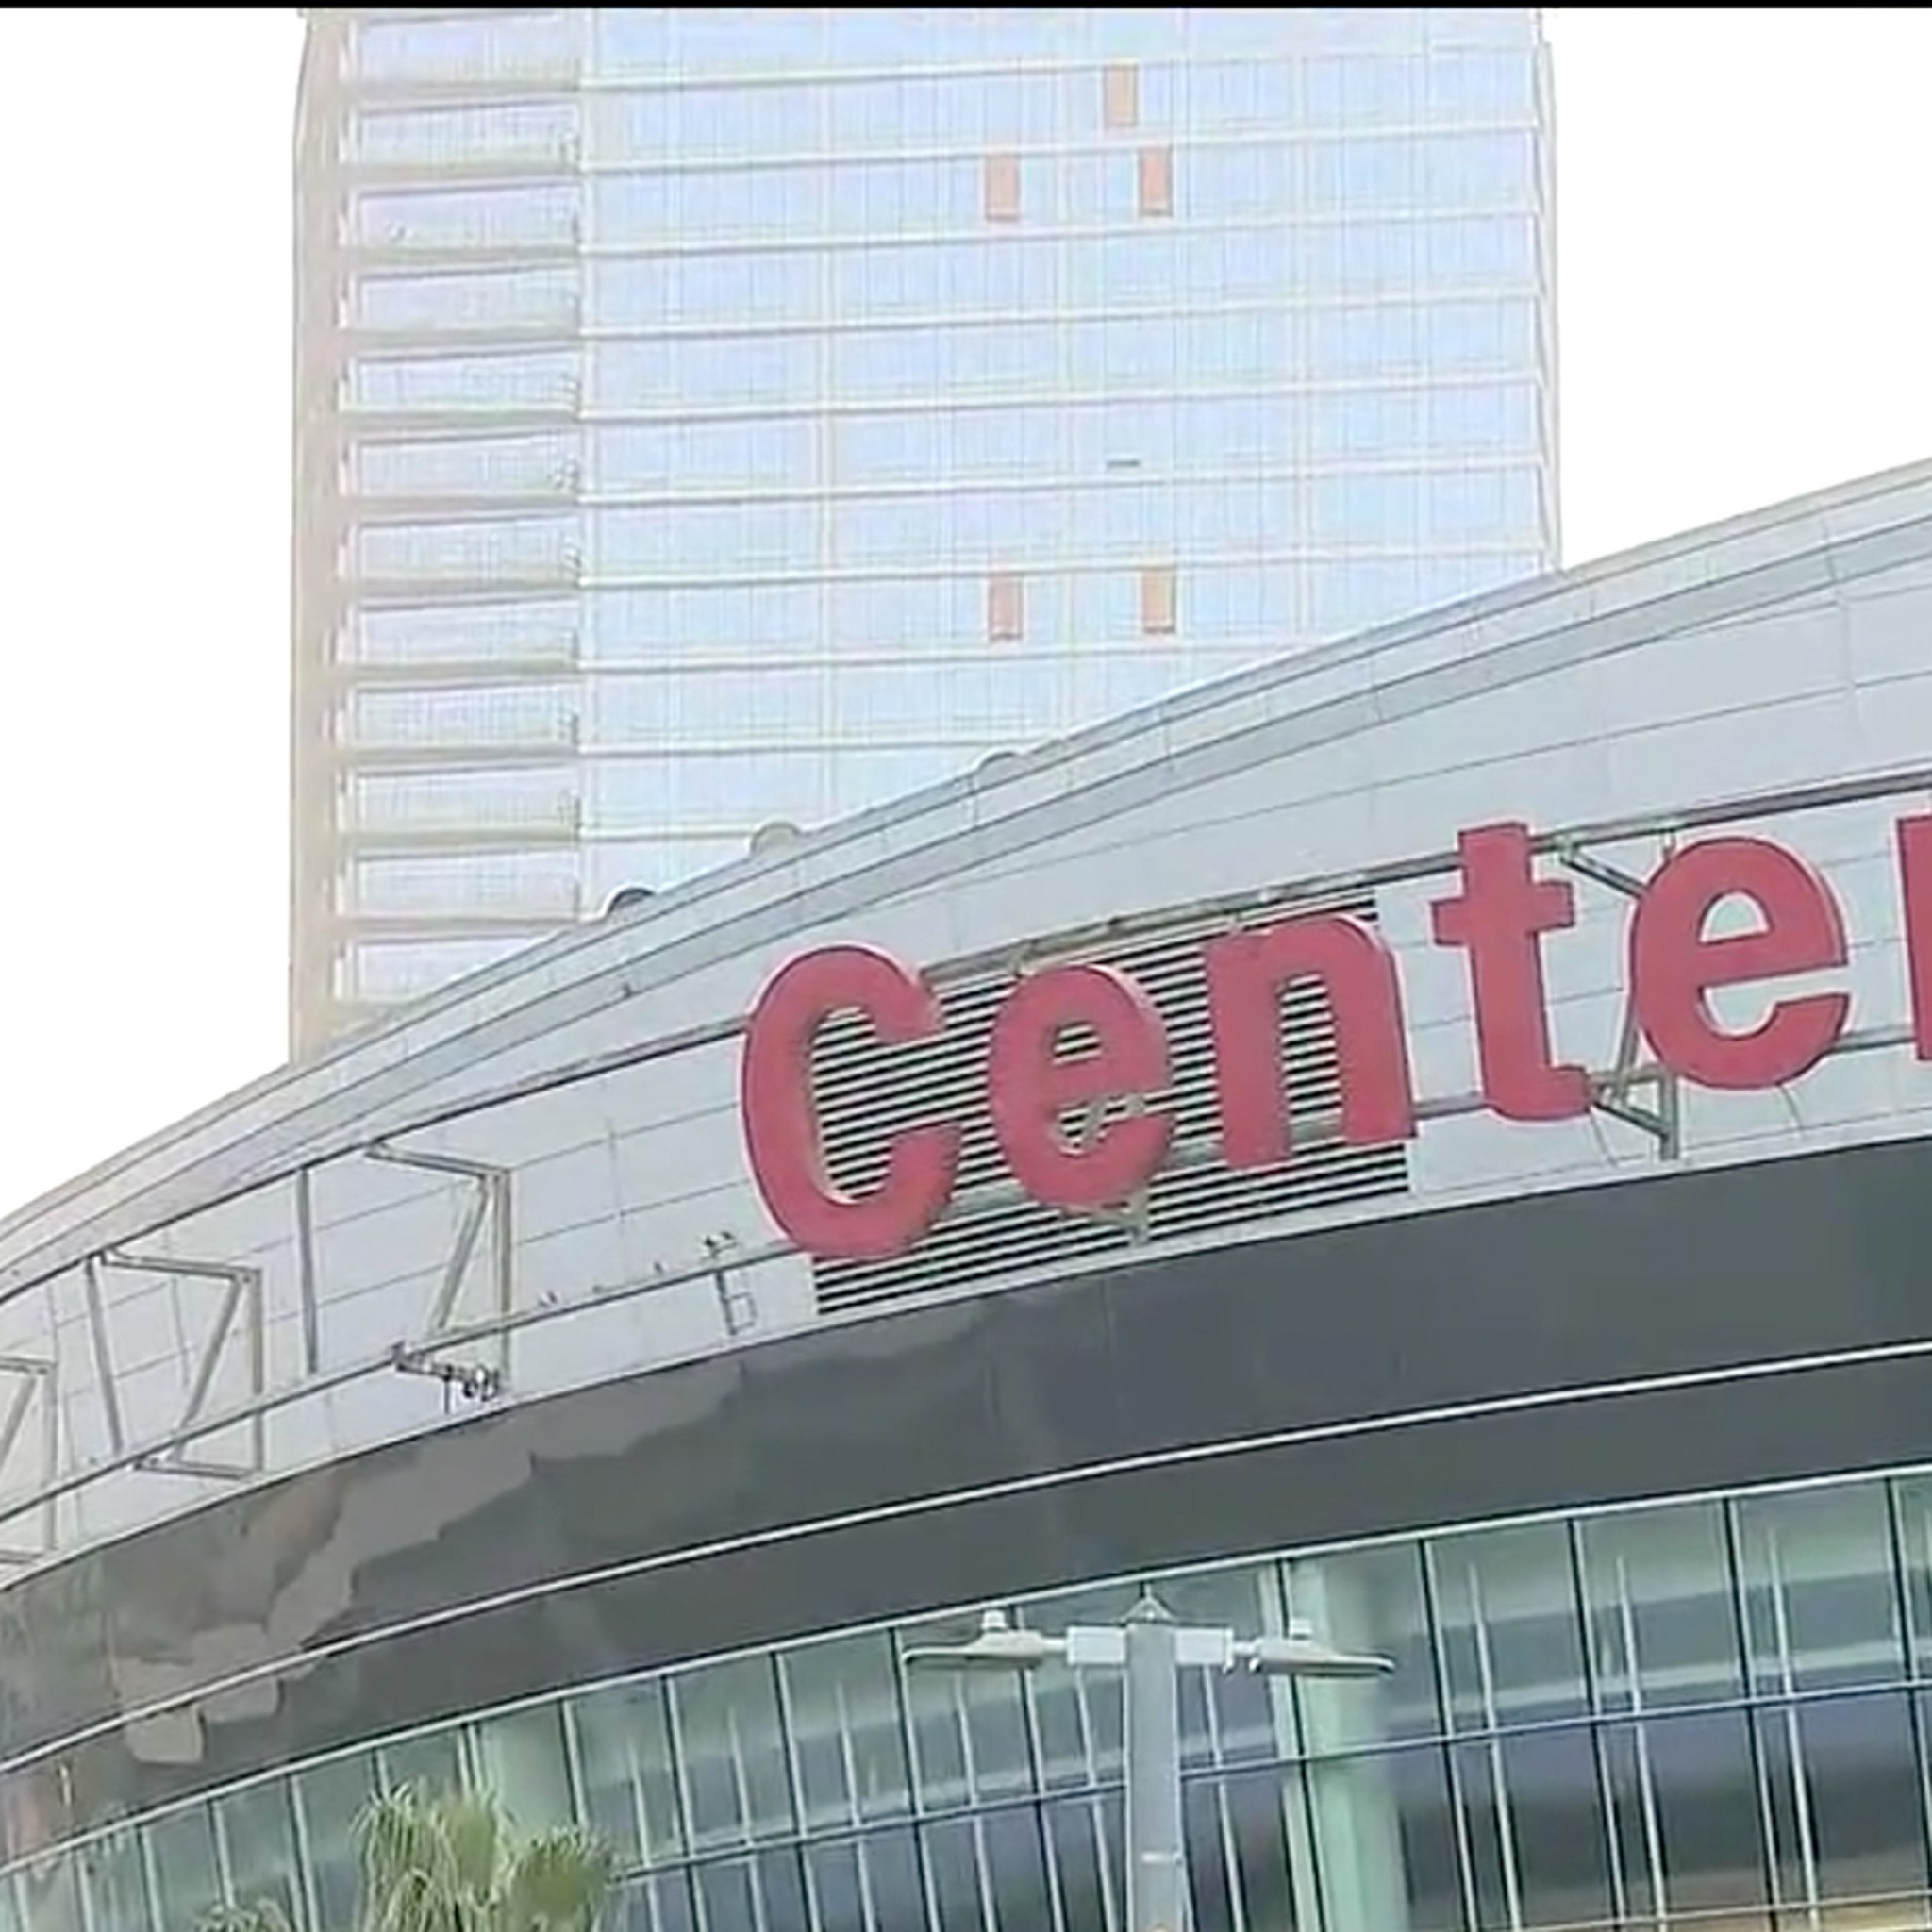 Staples Center no more, Crypto.com Arena signs are up